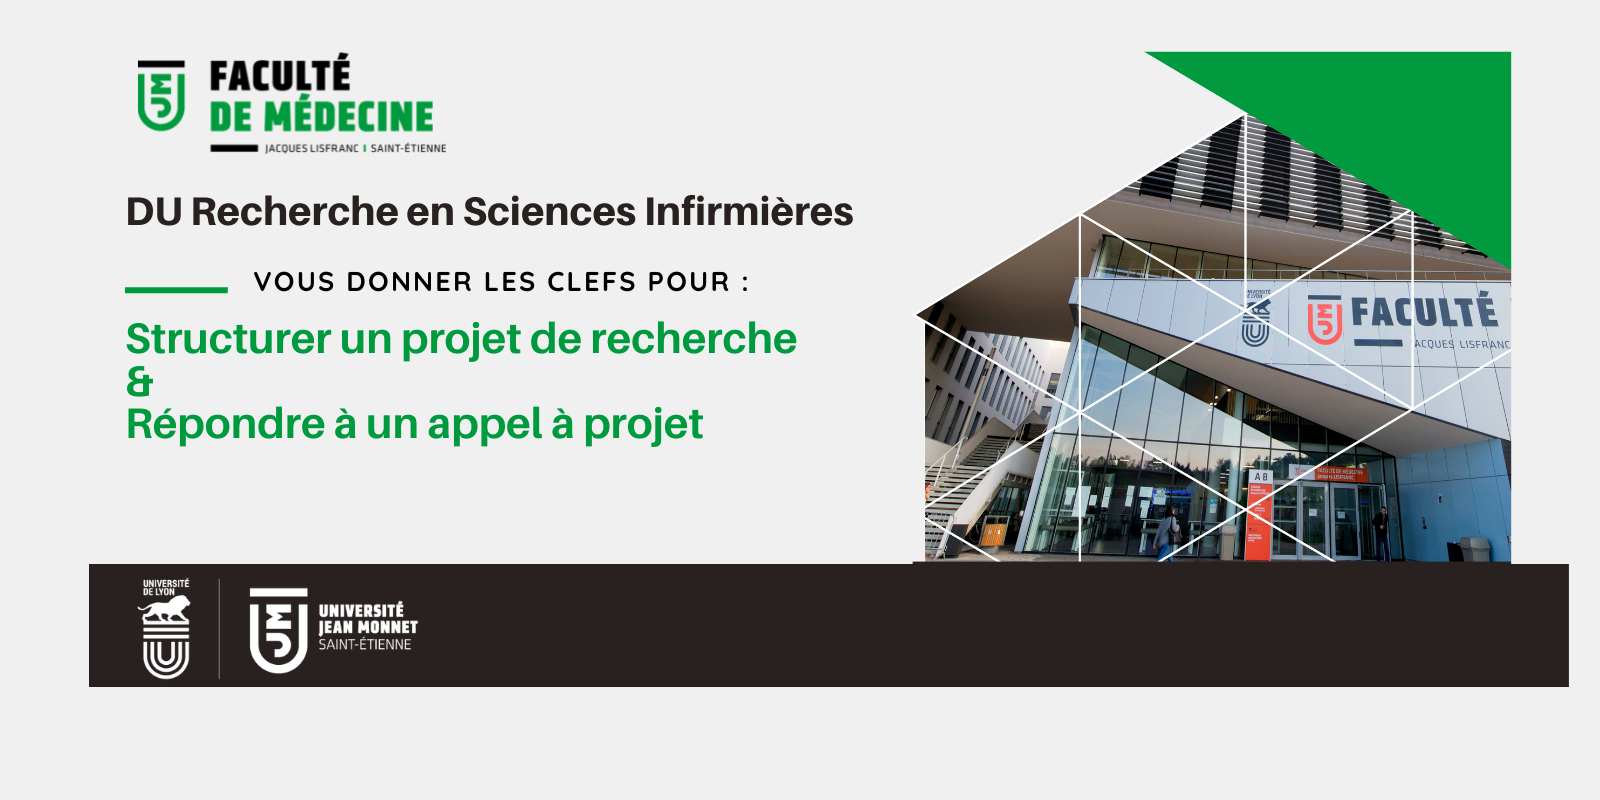 Visuel représentant l'entrée de la Faculté de Médecine de St Etienne, avec intitulé du DU Recherche en Sciences Infirmières